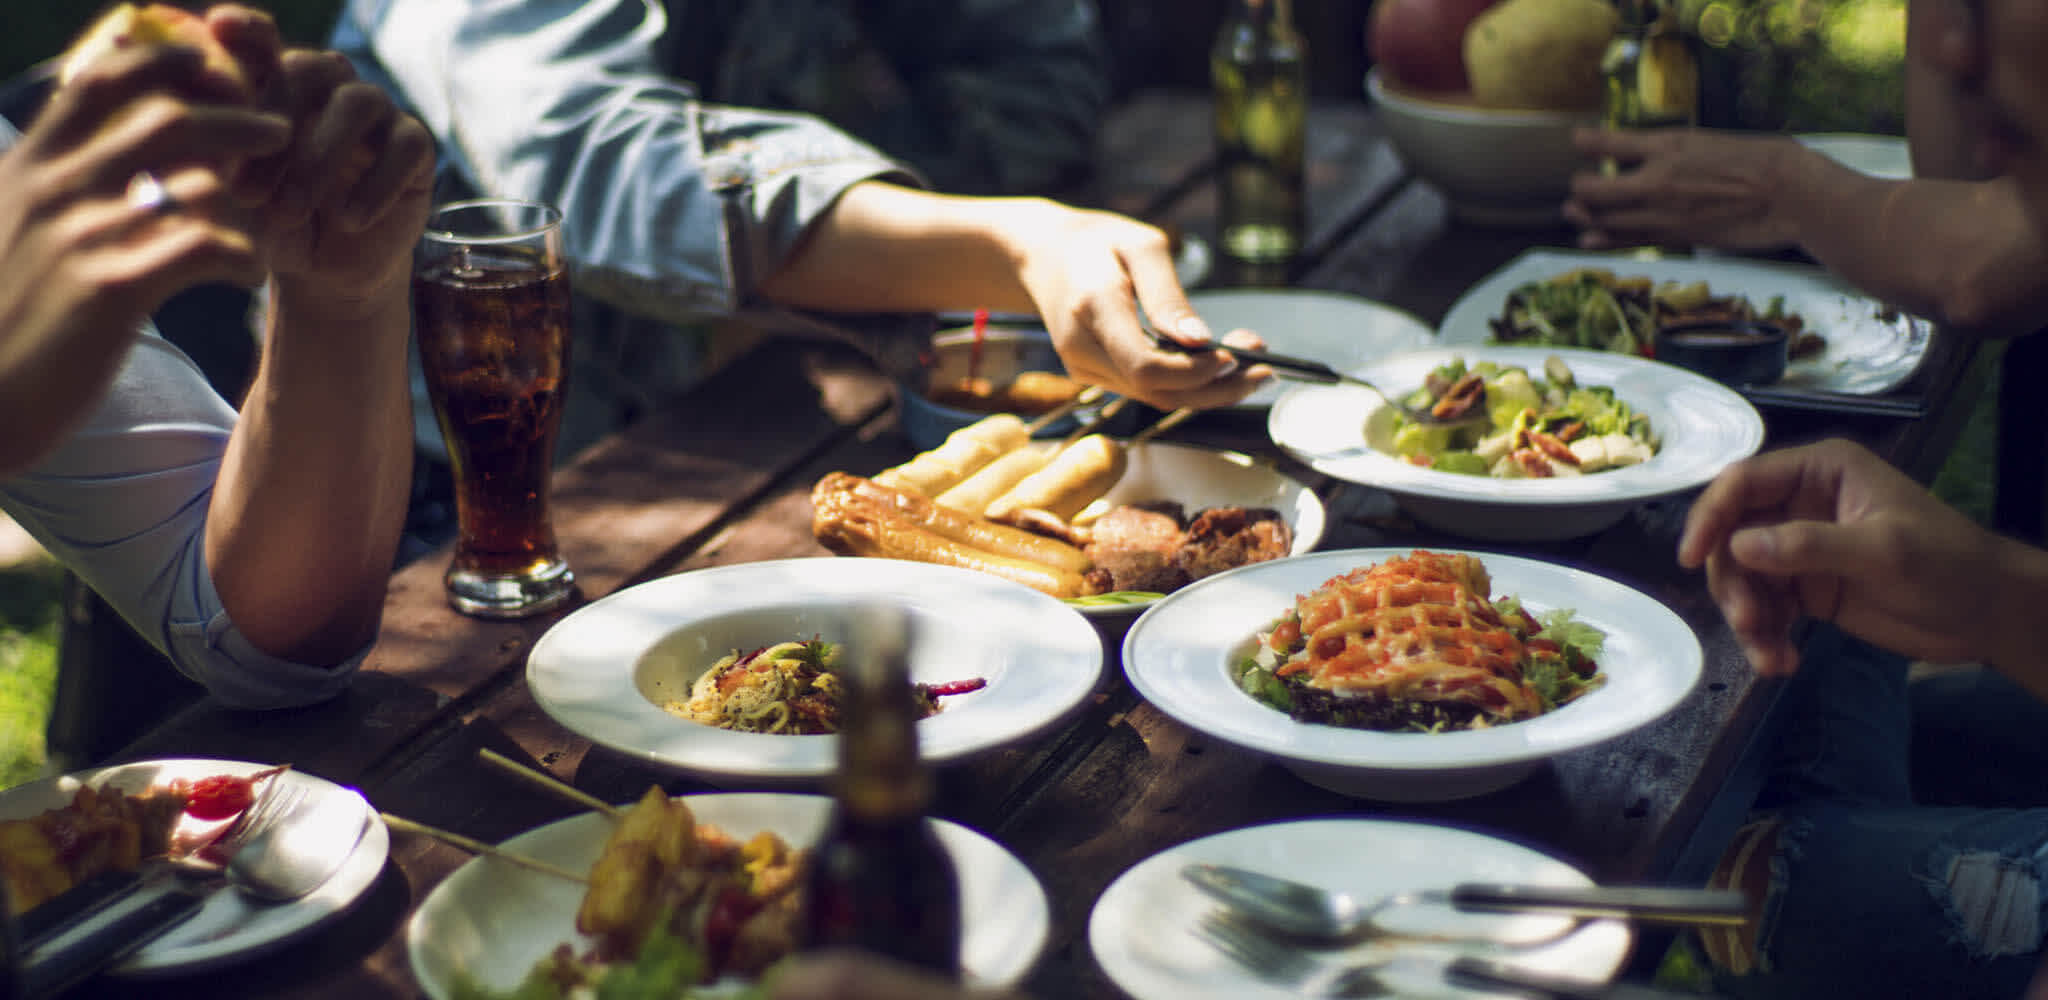 Pessoas se servem em mesa de madeira repleta de refeições saudáveis